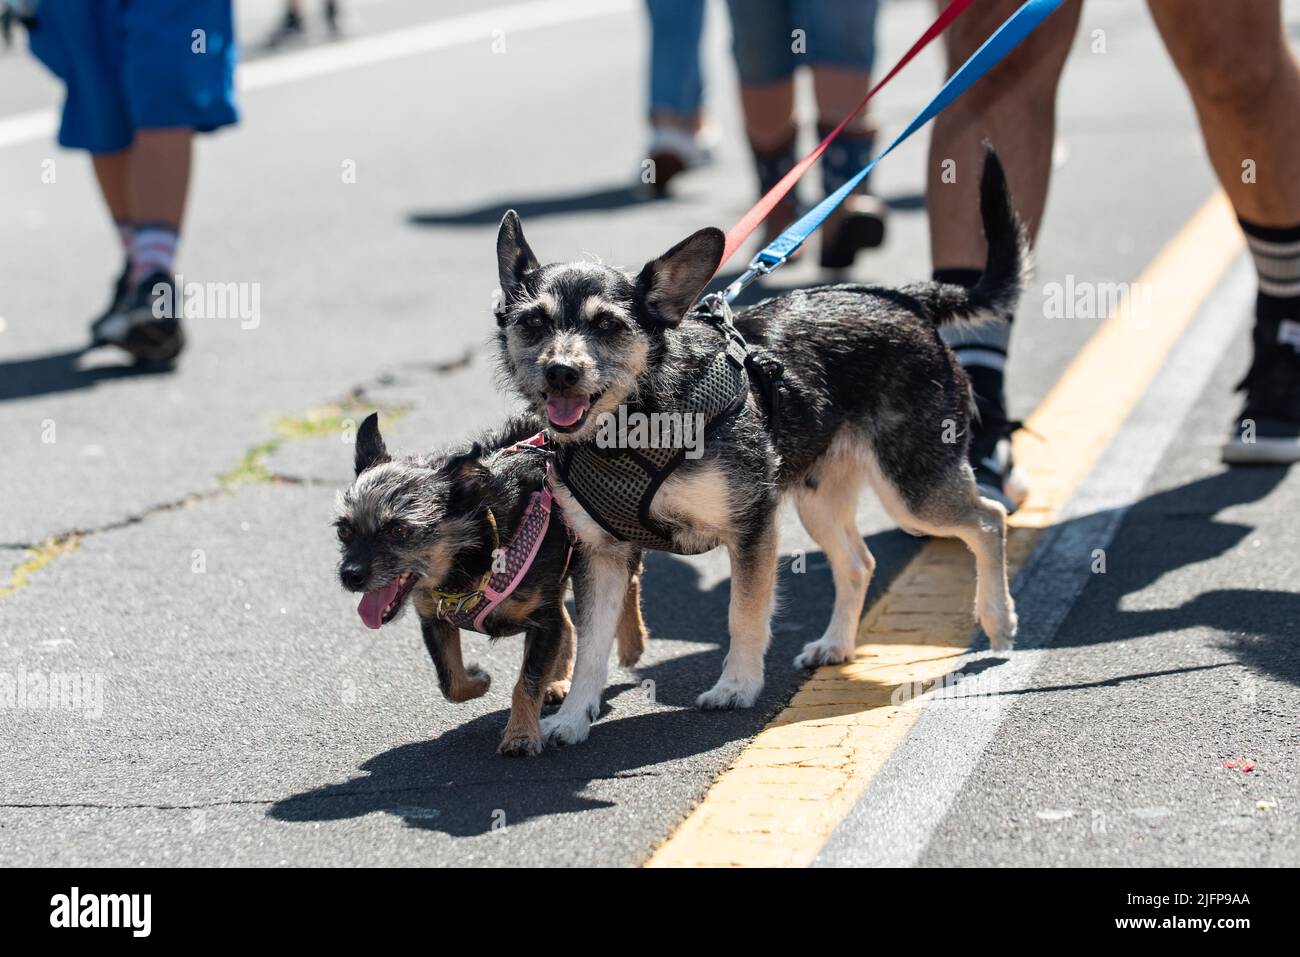 Die Holiday Parade in einer kleinen Stadt ist der perfekte Ort, um die großen und kleinen Terrier-Hunde mitten auf der Straße zu laufen. Stockfoto